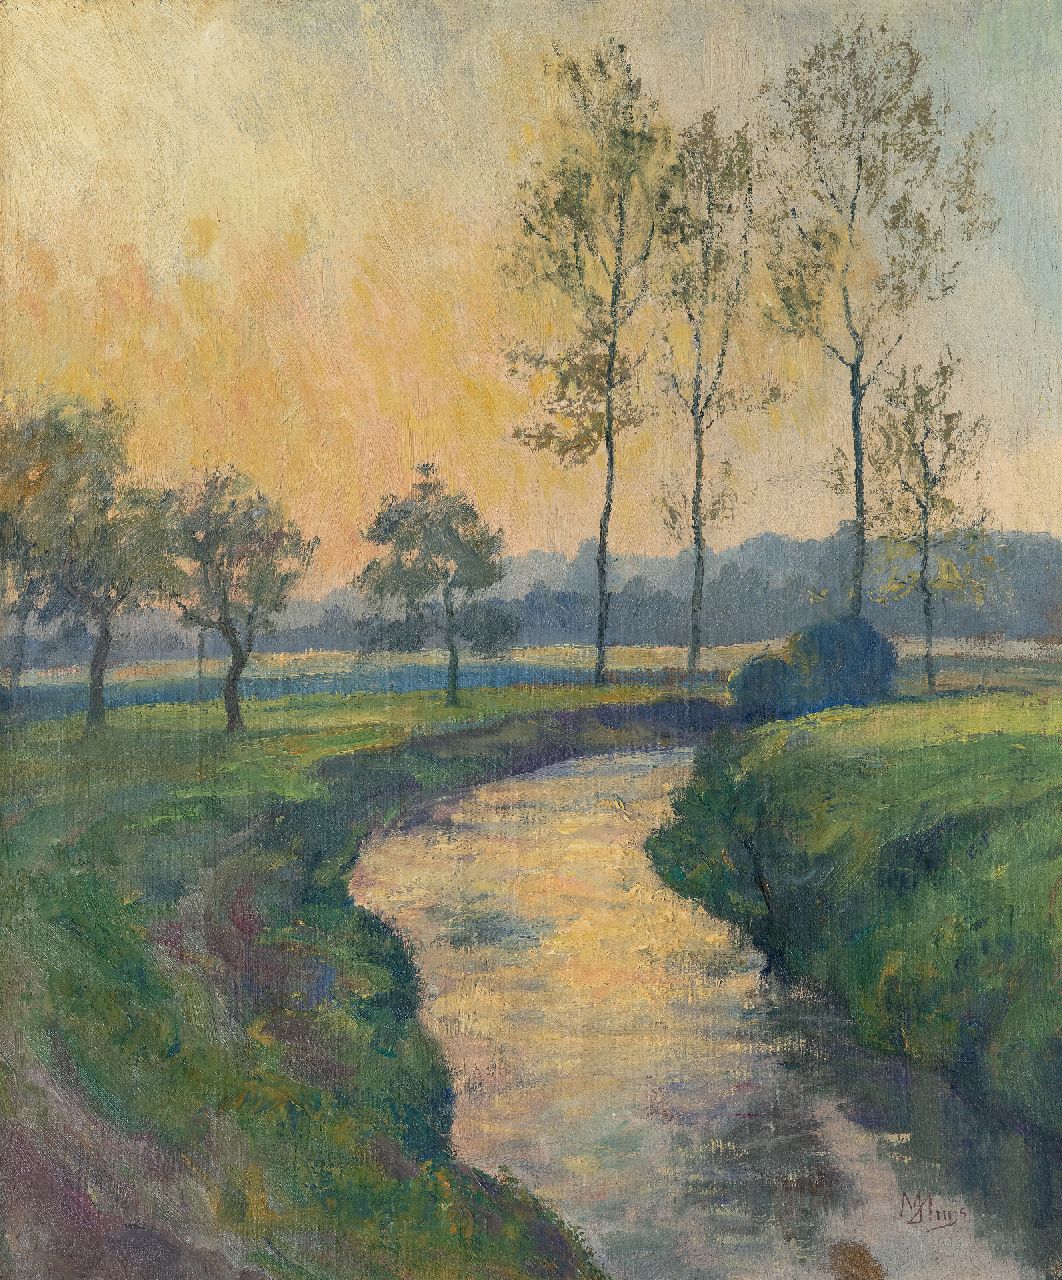 Huys M.  | Modest Huys | Schilderijen te koop aangeboden | Vlaams landschap met beek (vermoedelijk de Mandel of de Leie), olieverf op doek 60,5 x 50,3 cm, gesigneerd rechtsonder